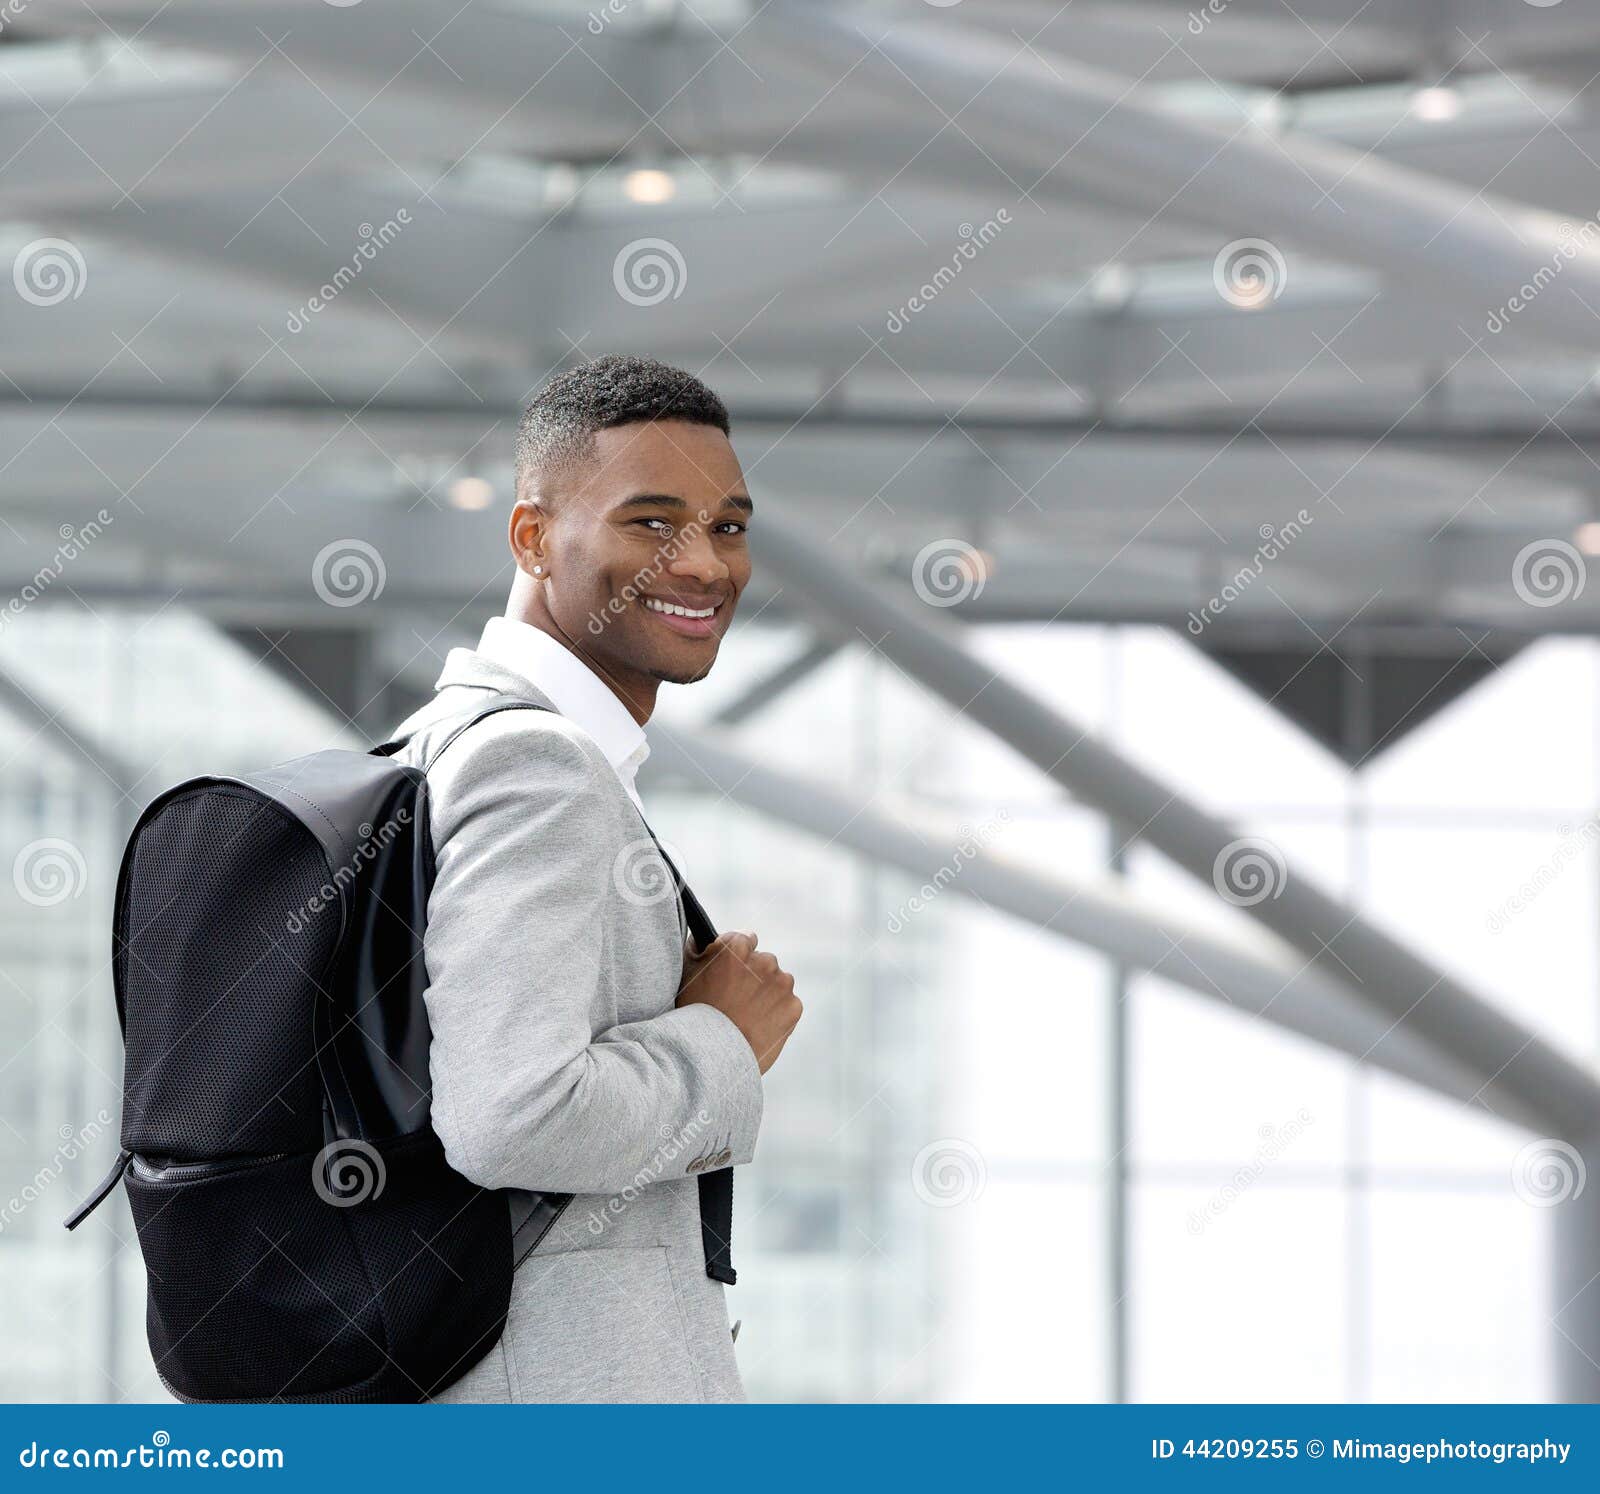 handsome-young-black-man-smiling-bag-close-up-portrait-44209255.jpg